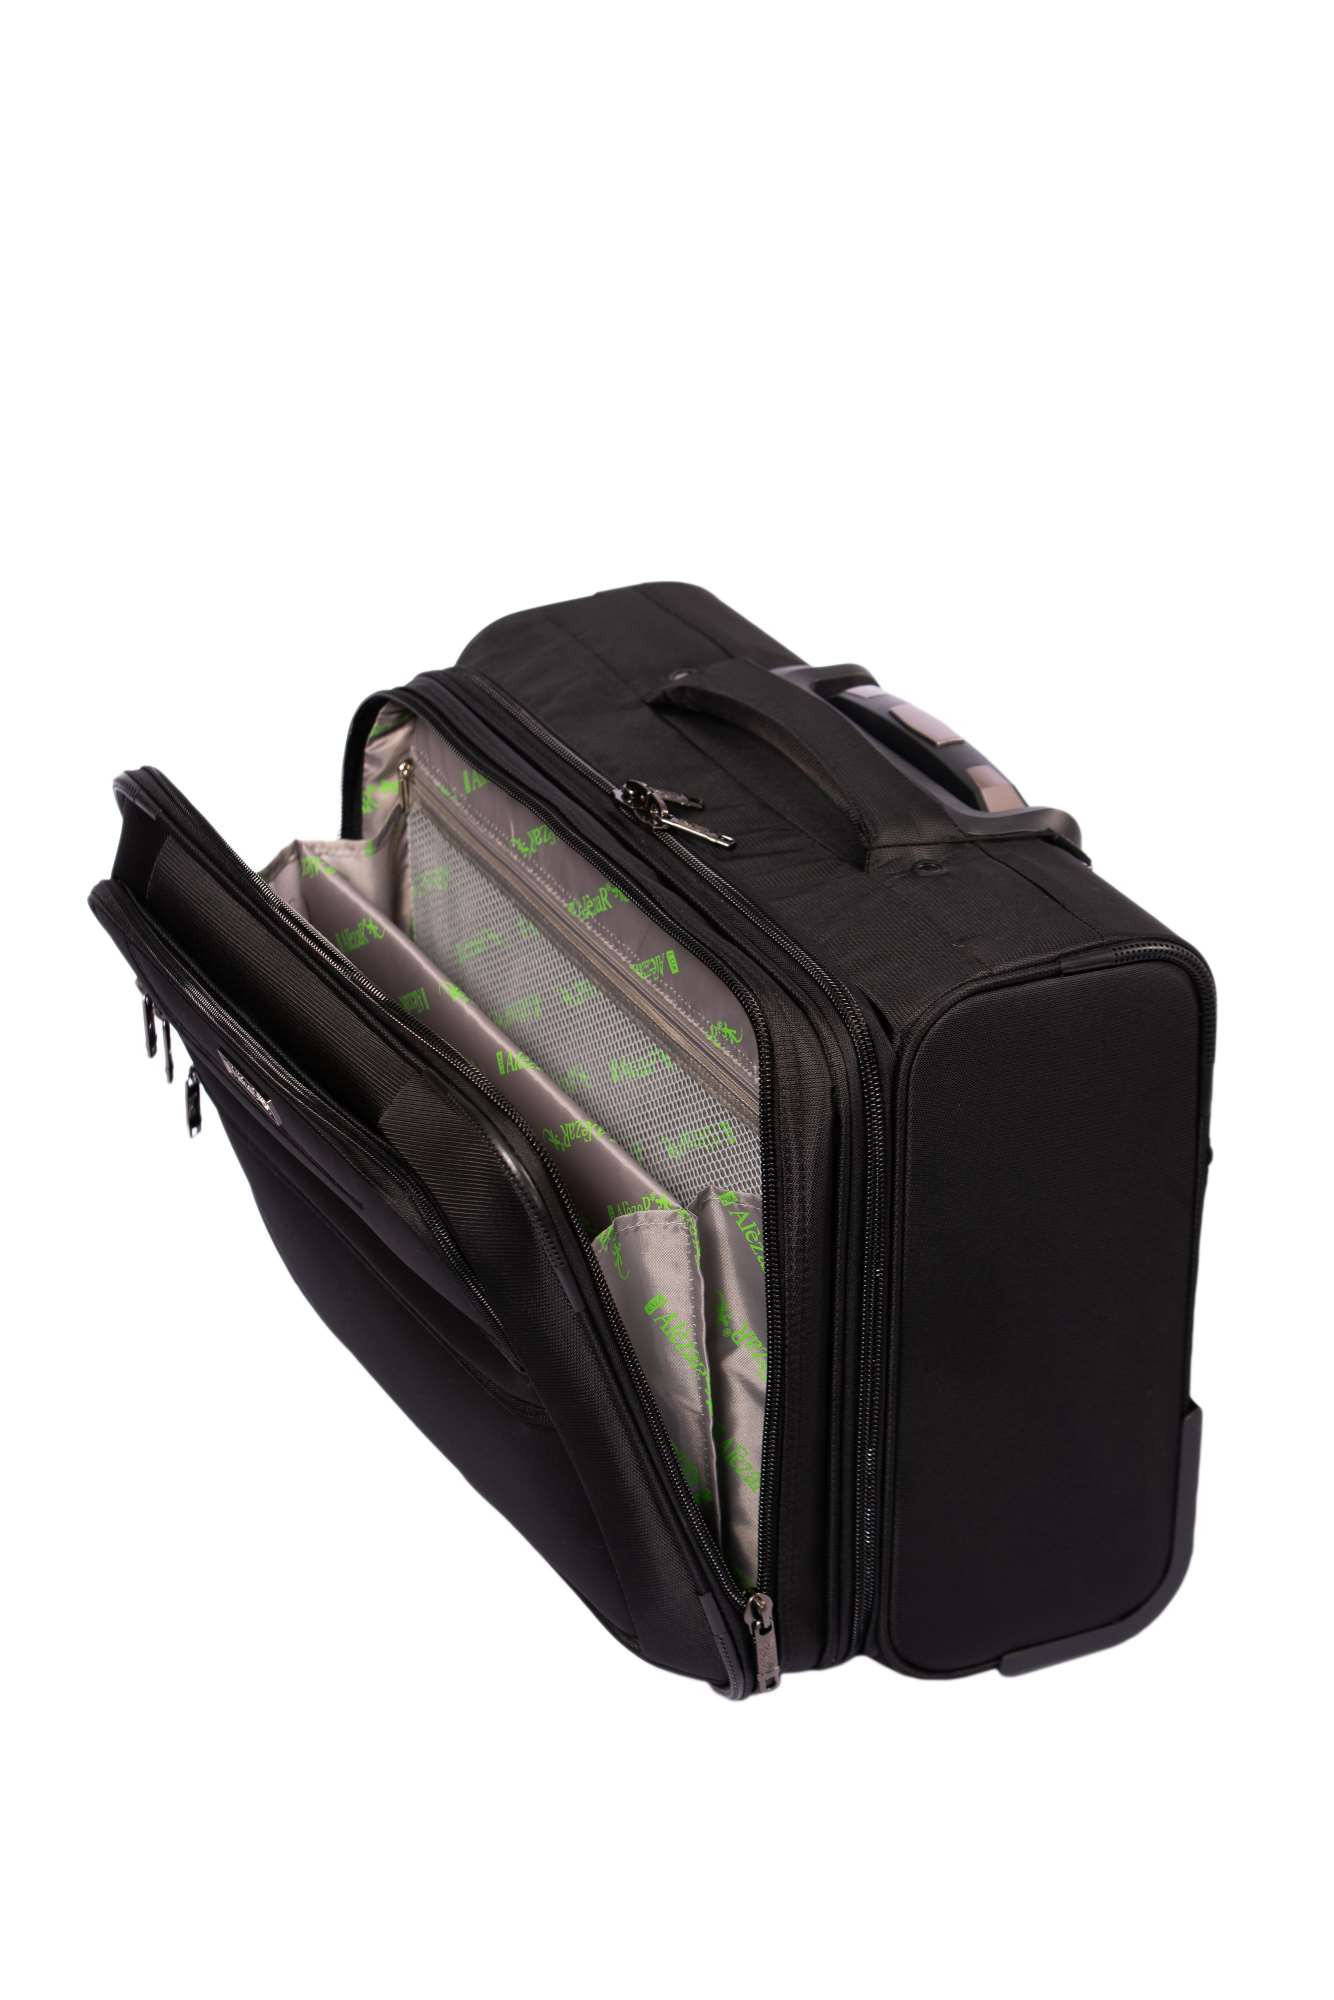 Alezar Cabin Size Travel Bag Black 38*26*45 cm